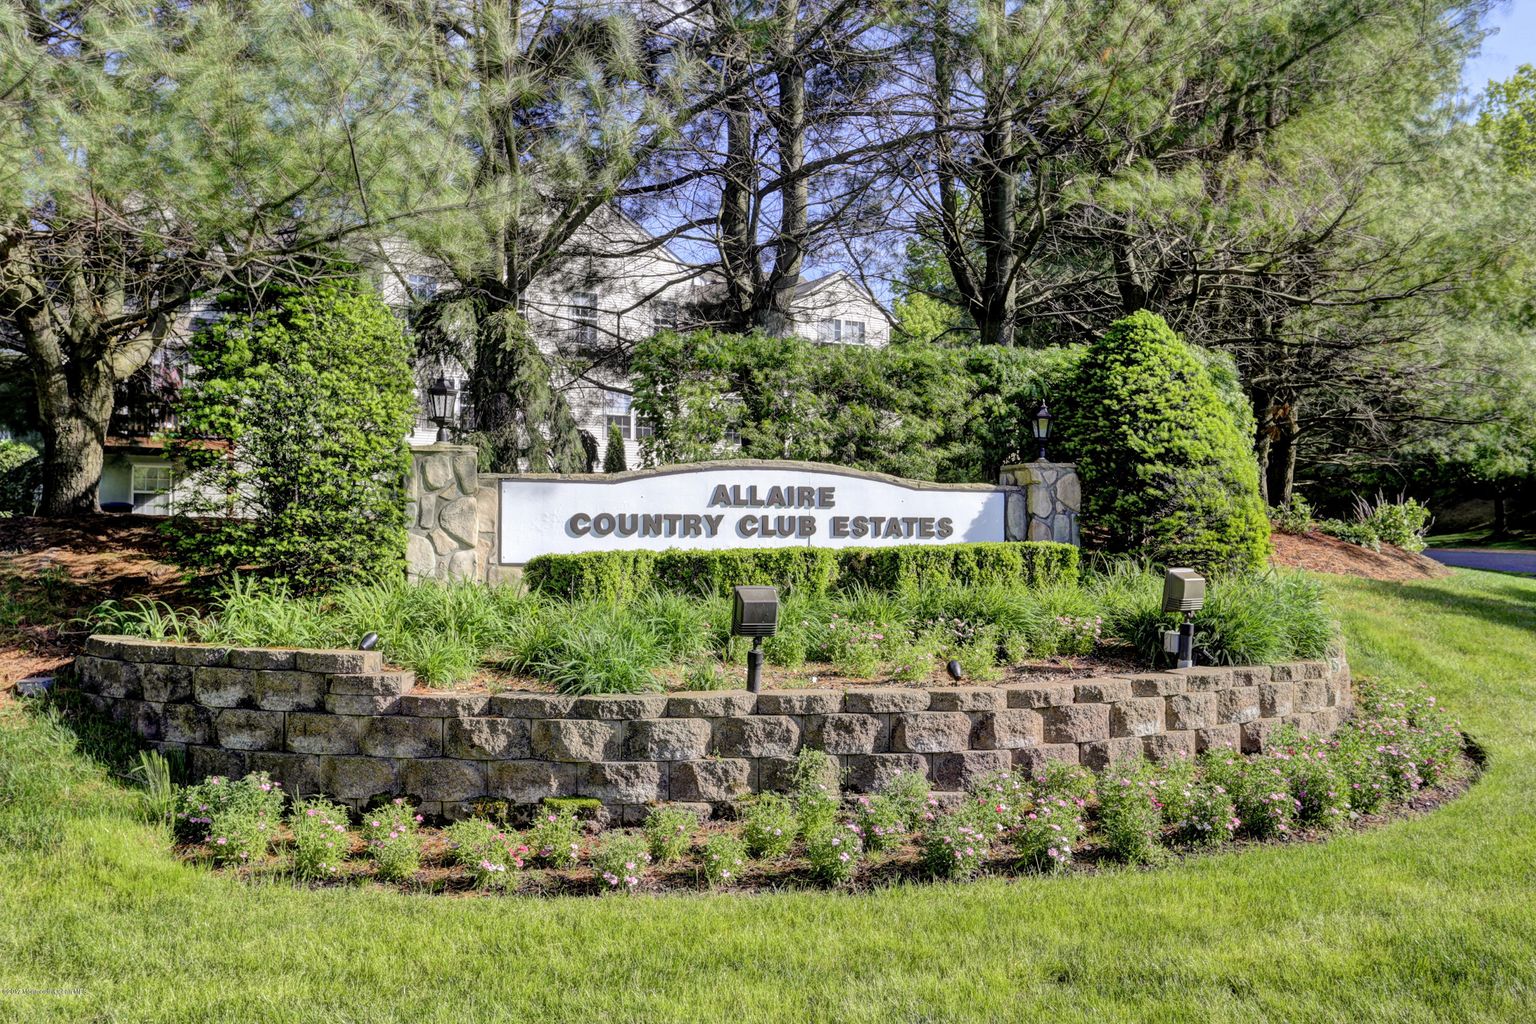 Allaire Country Club Estates